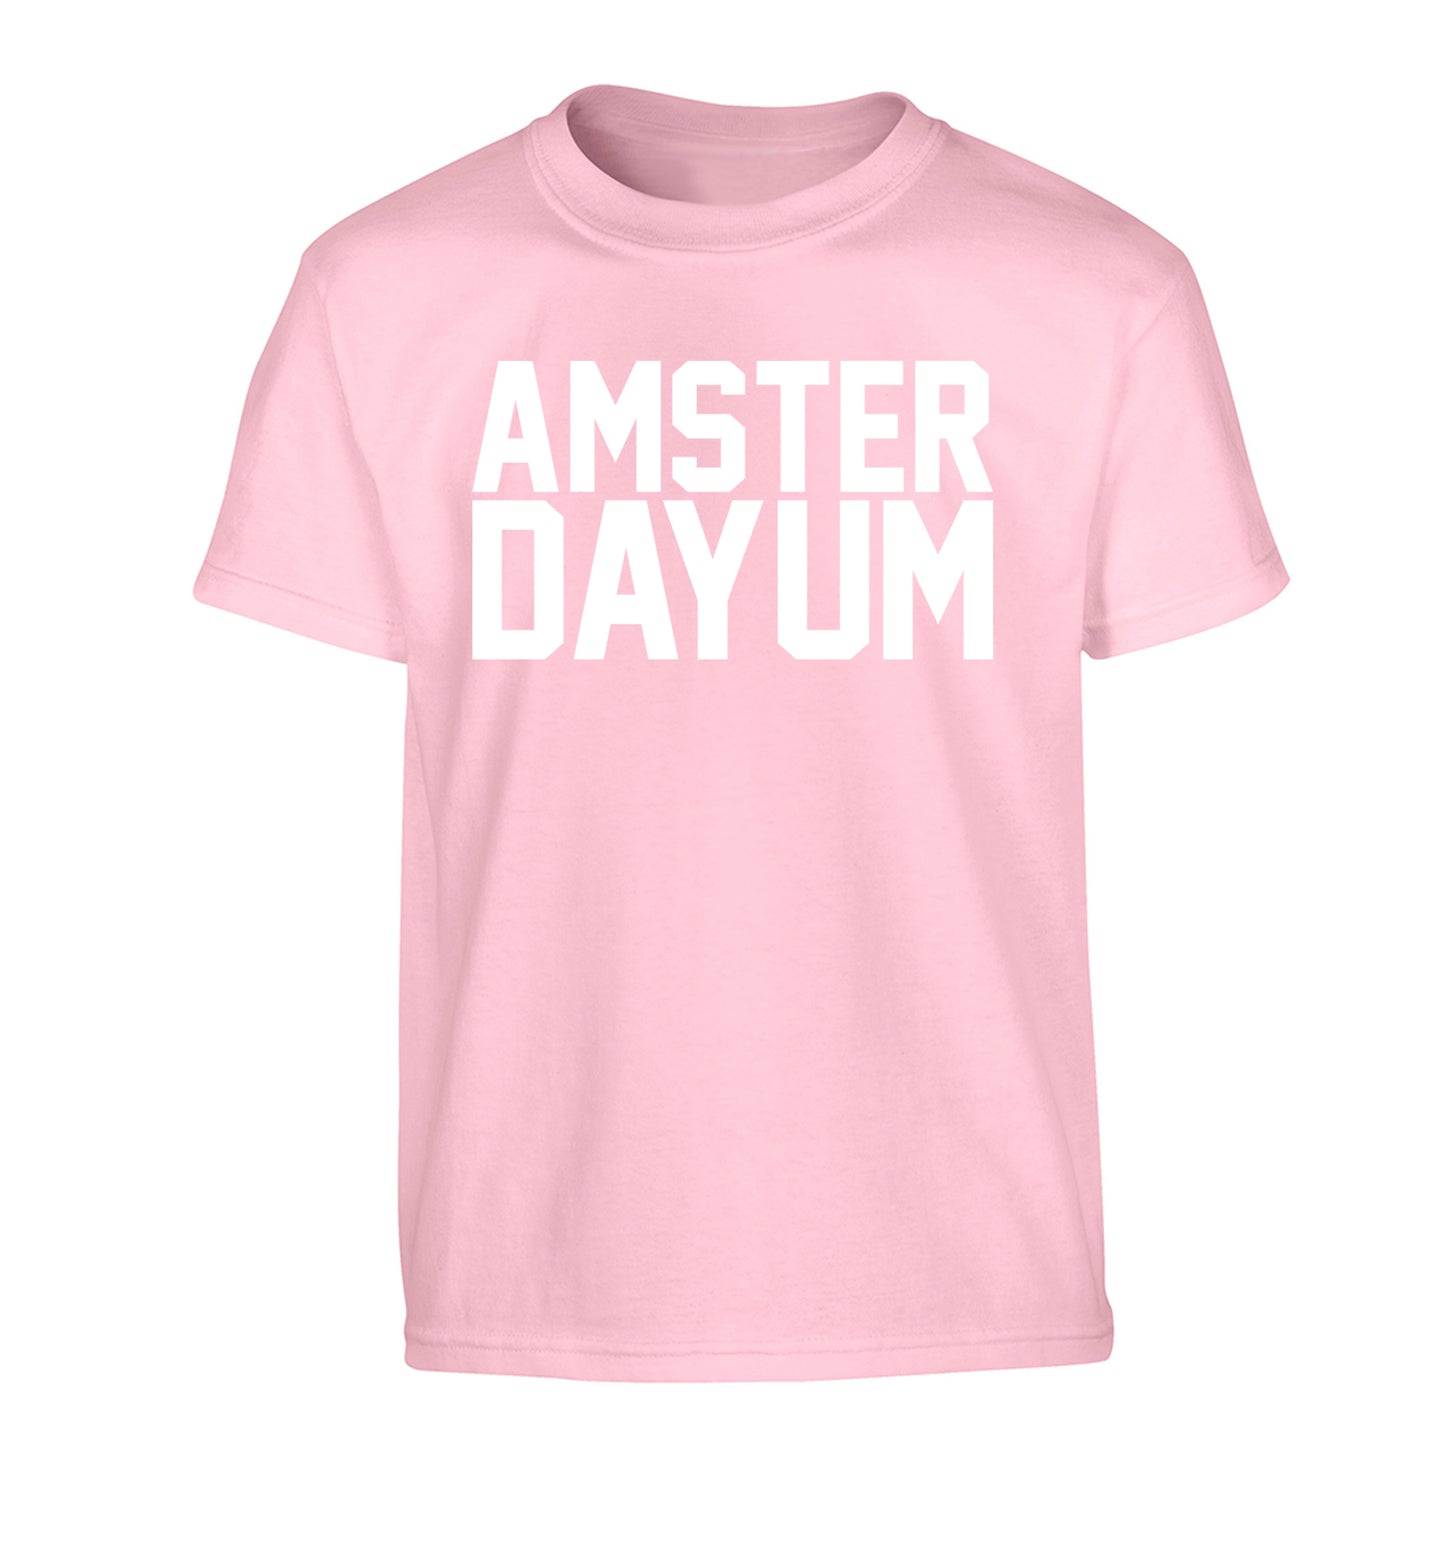 Amsterdayum Children's light pink Tshirt 12-13 Years